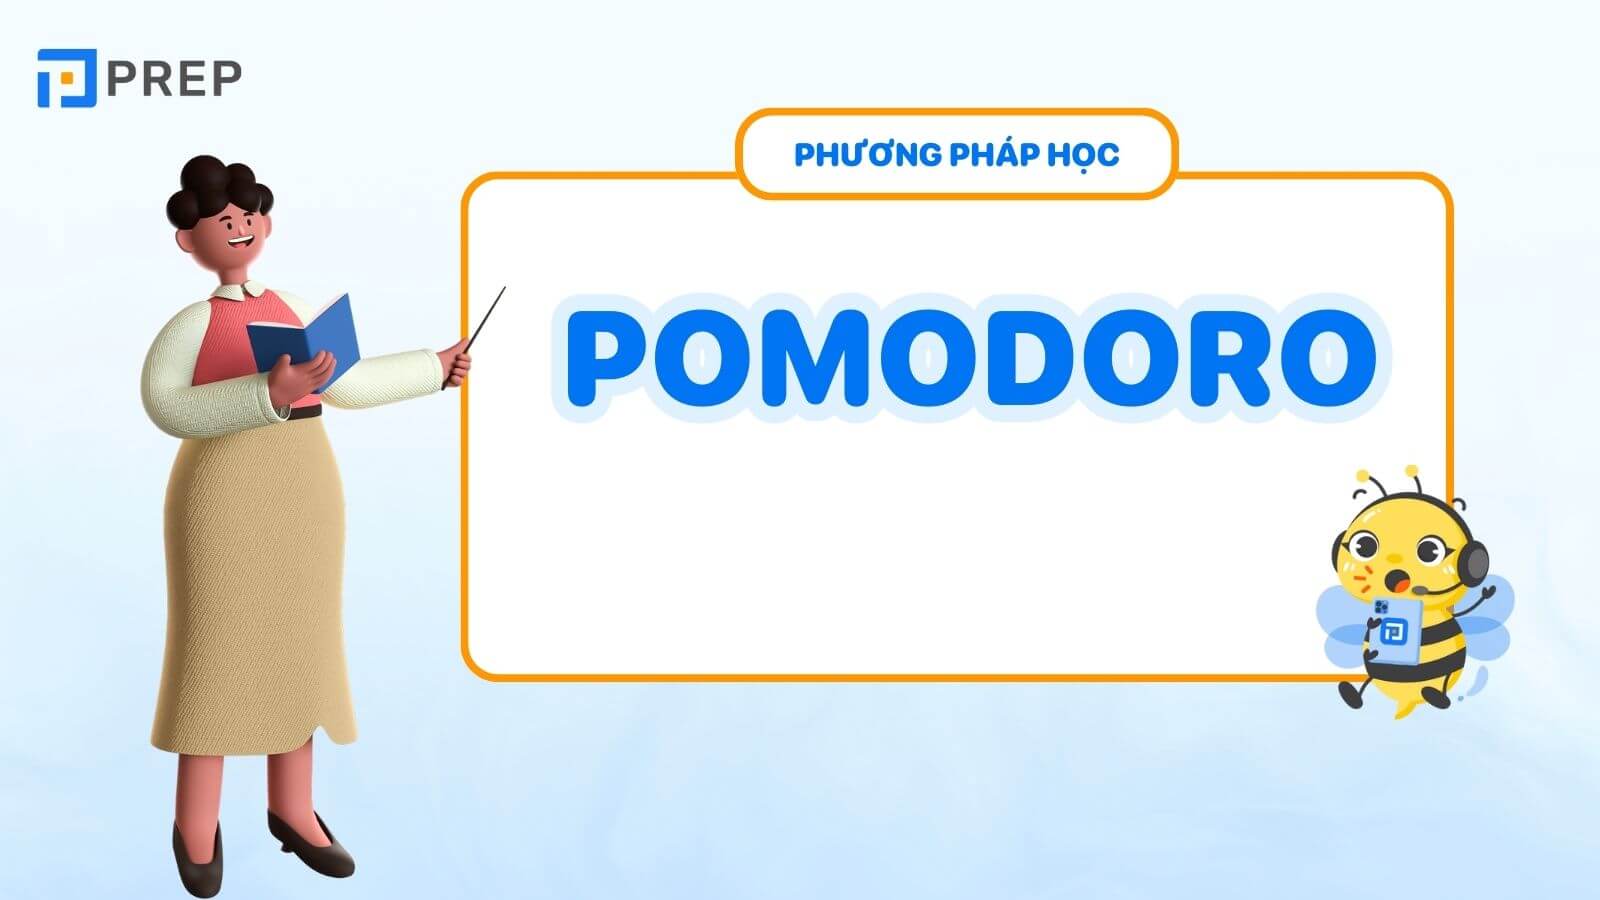 Phương pháp học tiếng Anh Pomorodo